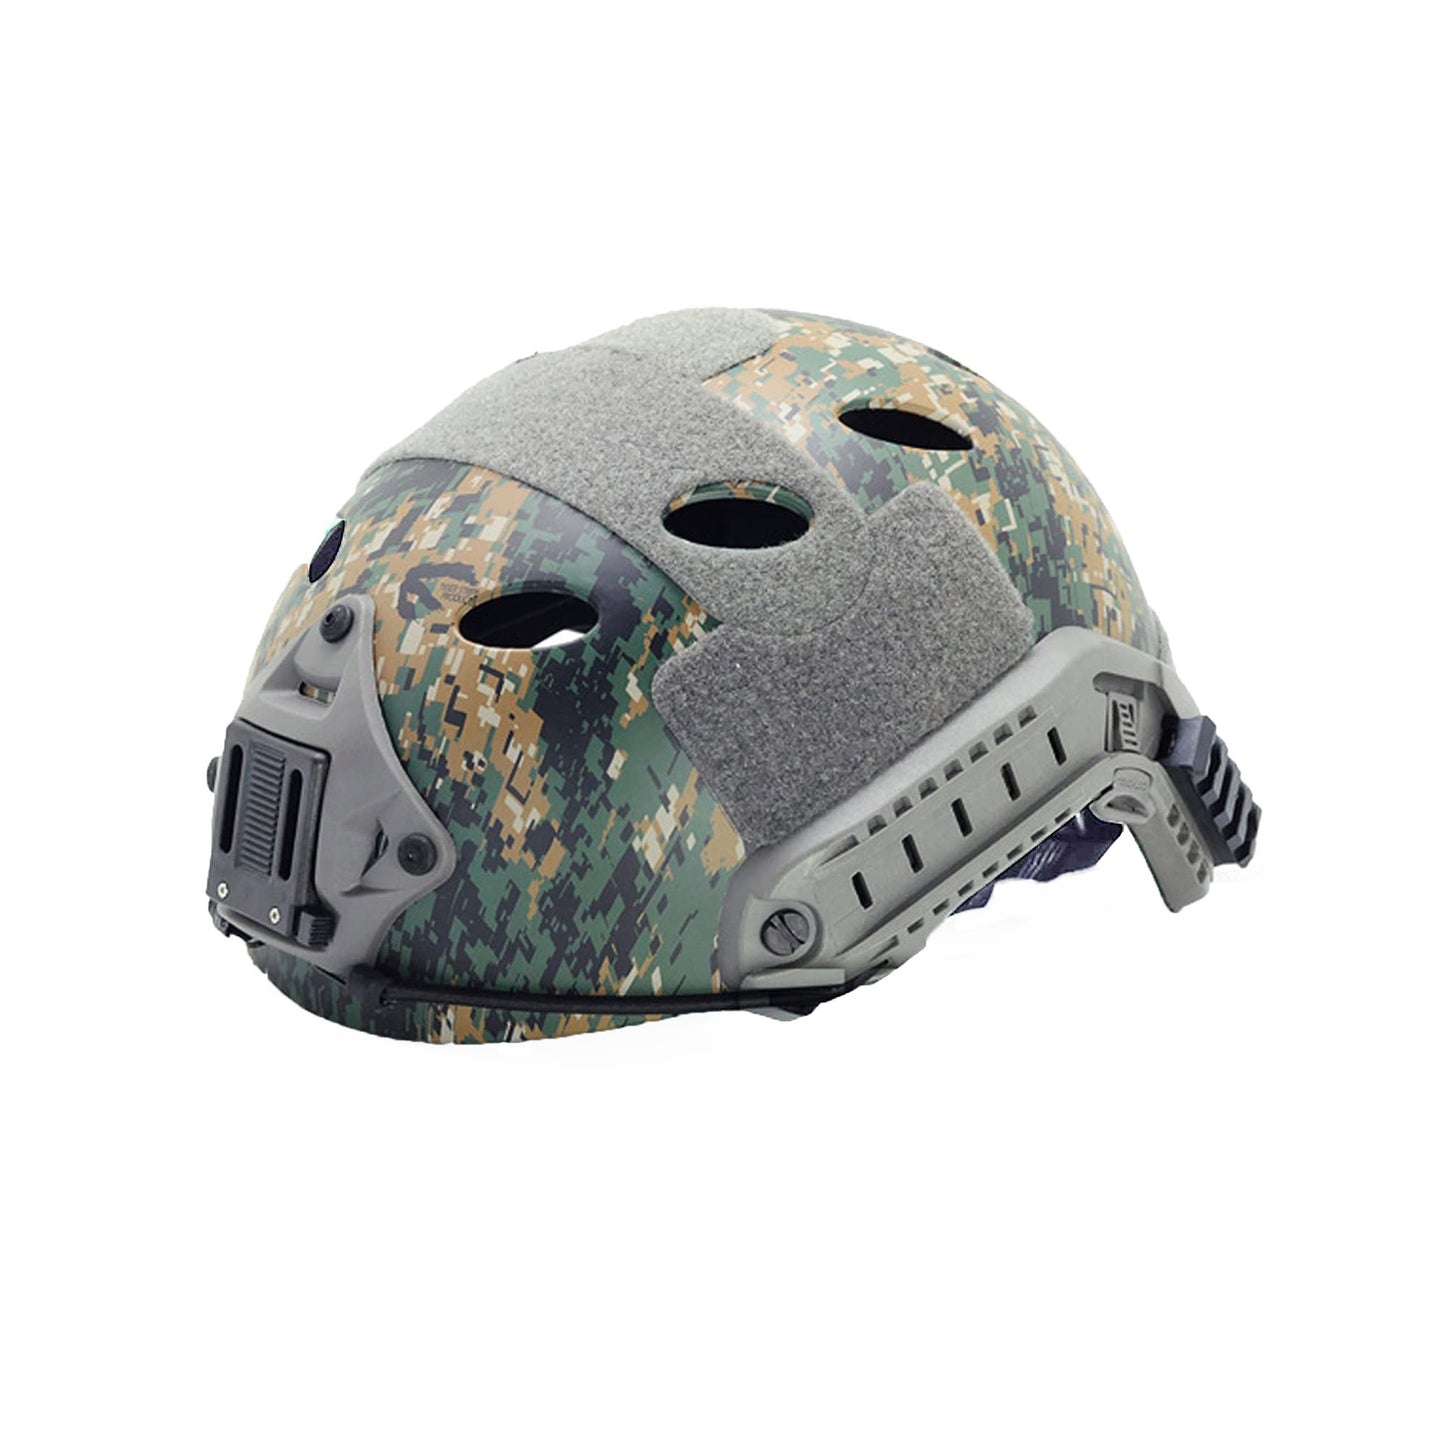 Aegis Tactical Bump Helmet